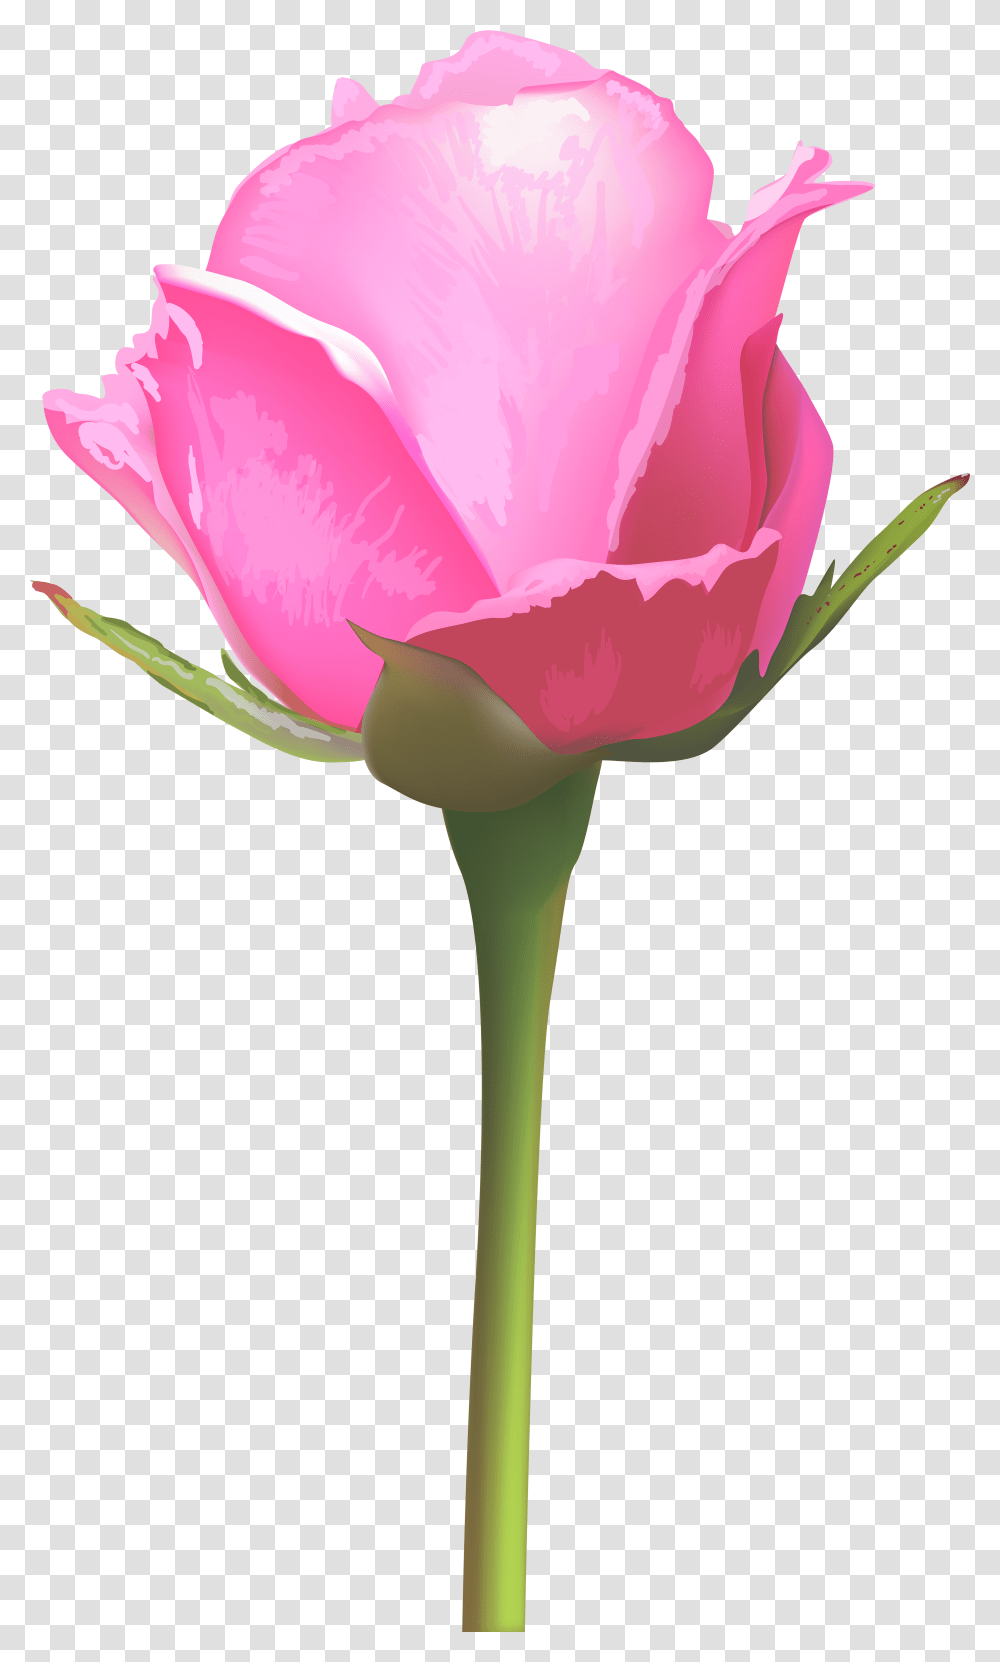 Rose Stem Single Pink Rose Flowers, Plant, Blossom, Petal Transparent Png